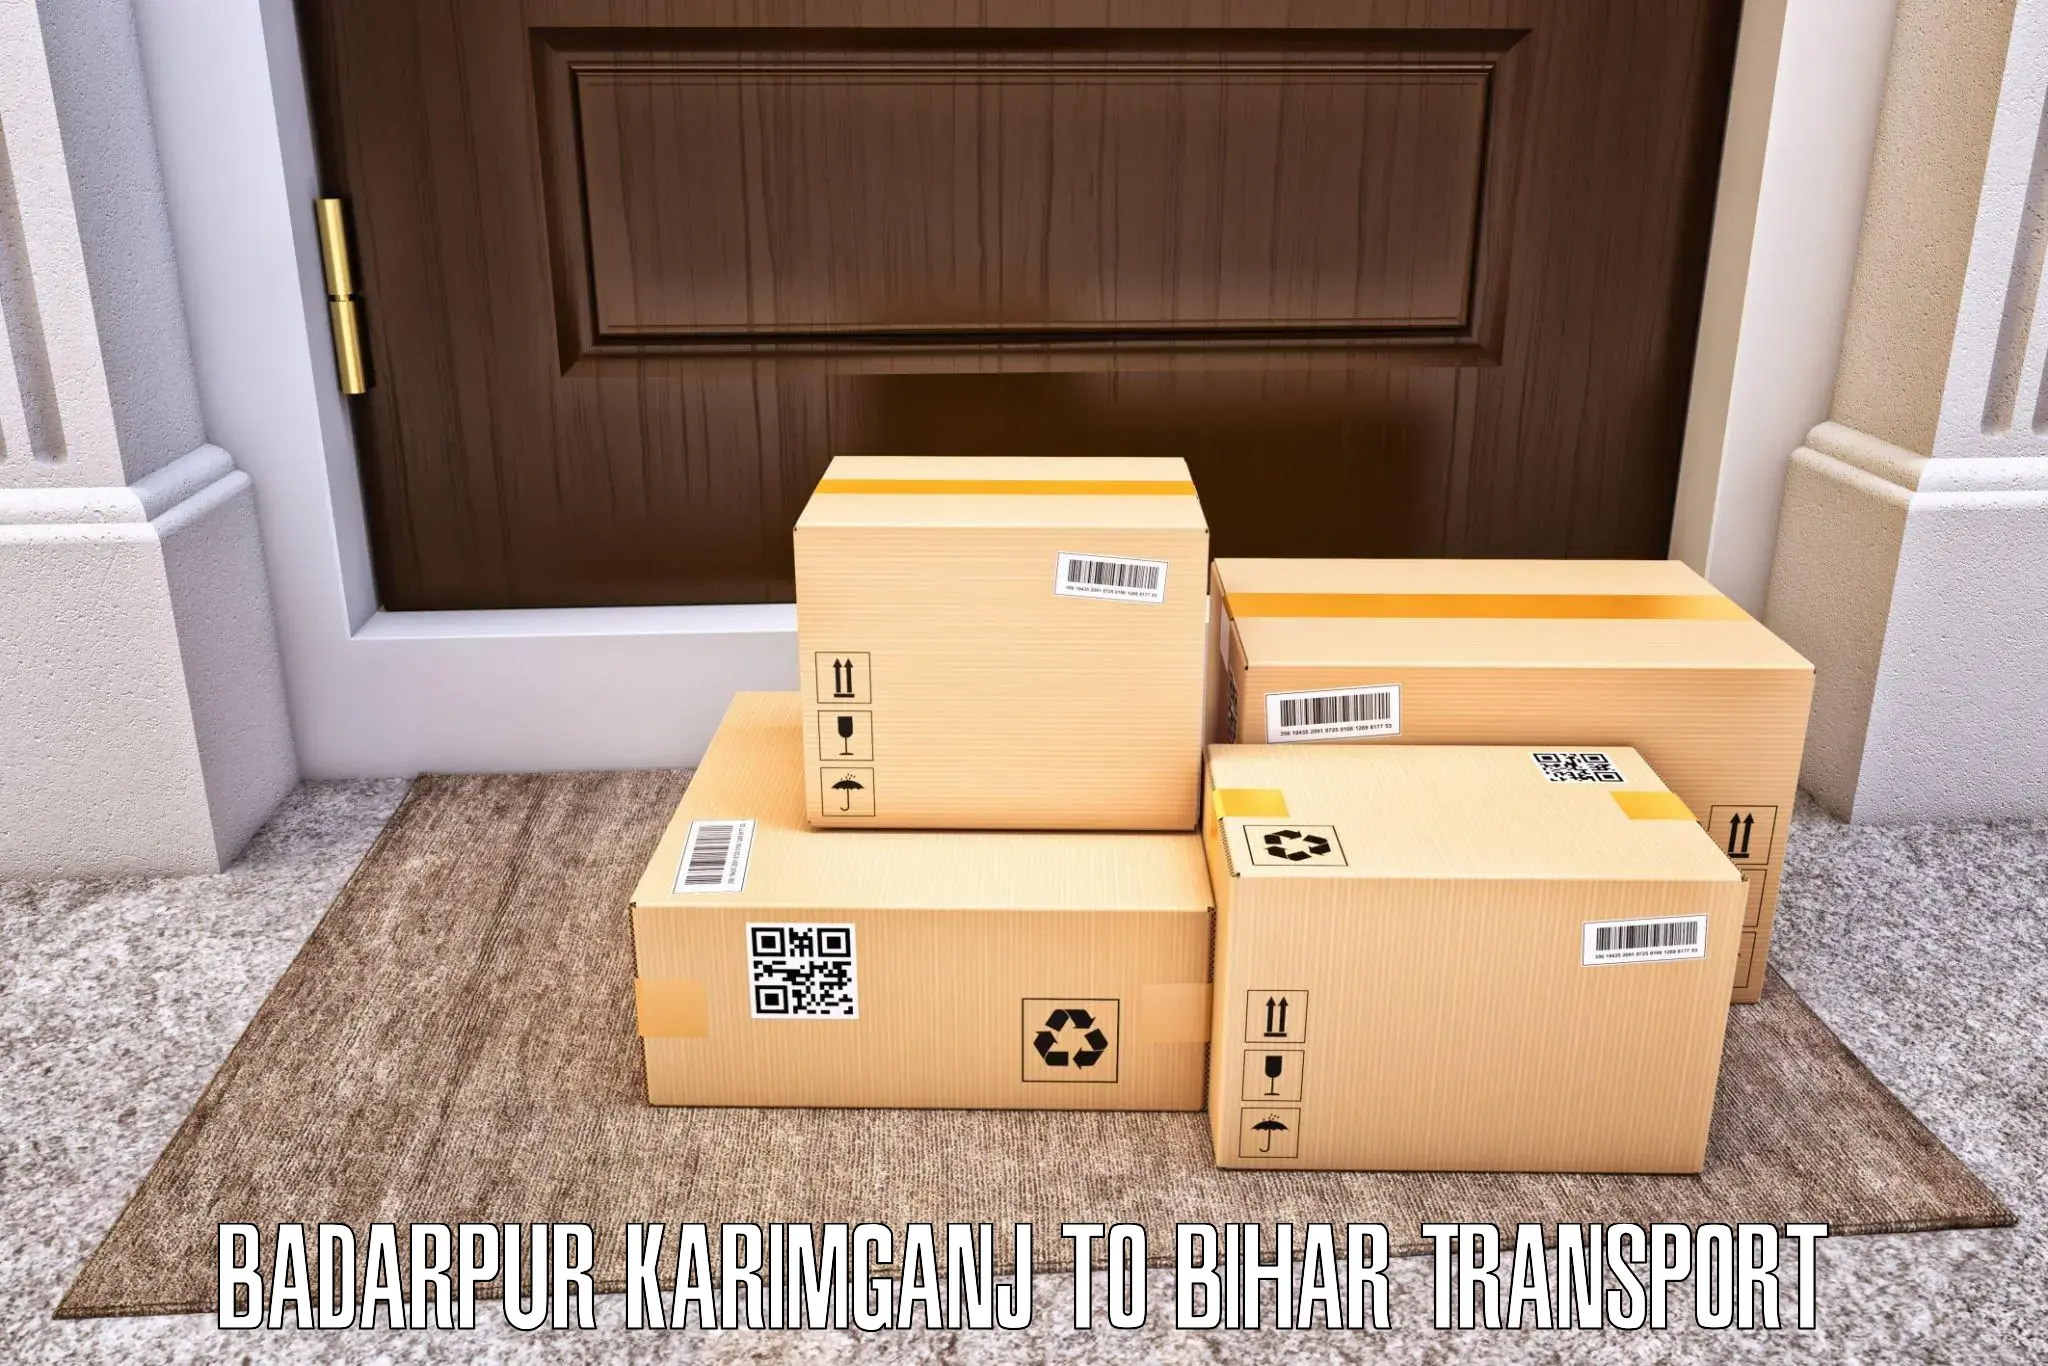 Bike shipping service Badarpur Karimganj to Bihta